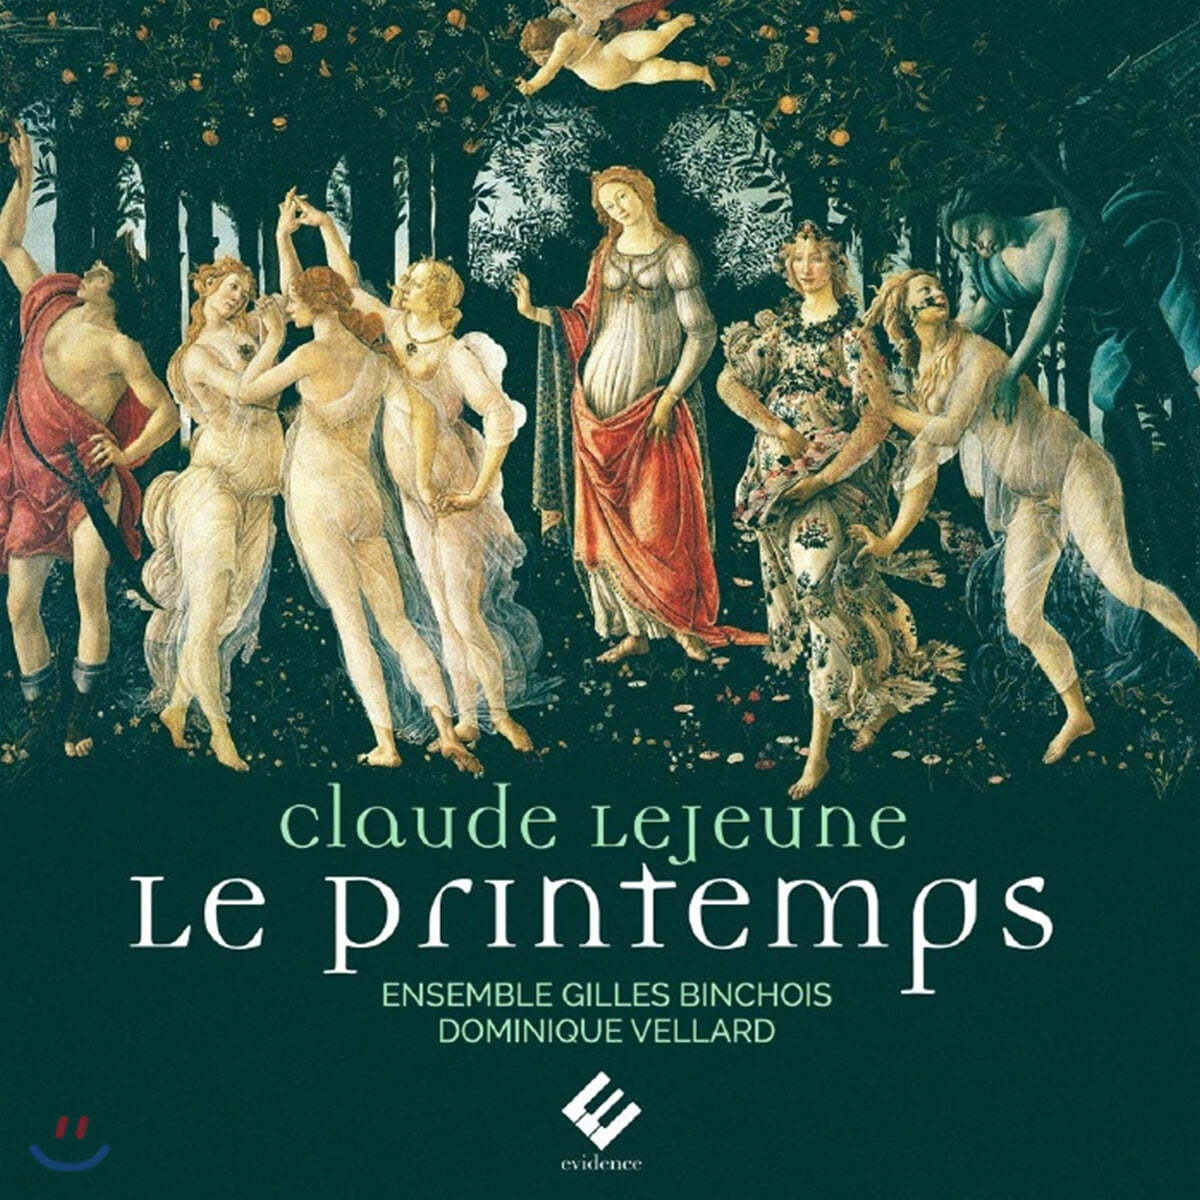 Dominique Vellard 클로드 르 죈: 봄 (Claude Le Jeune: Le Printemps) 